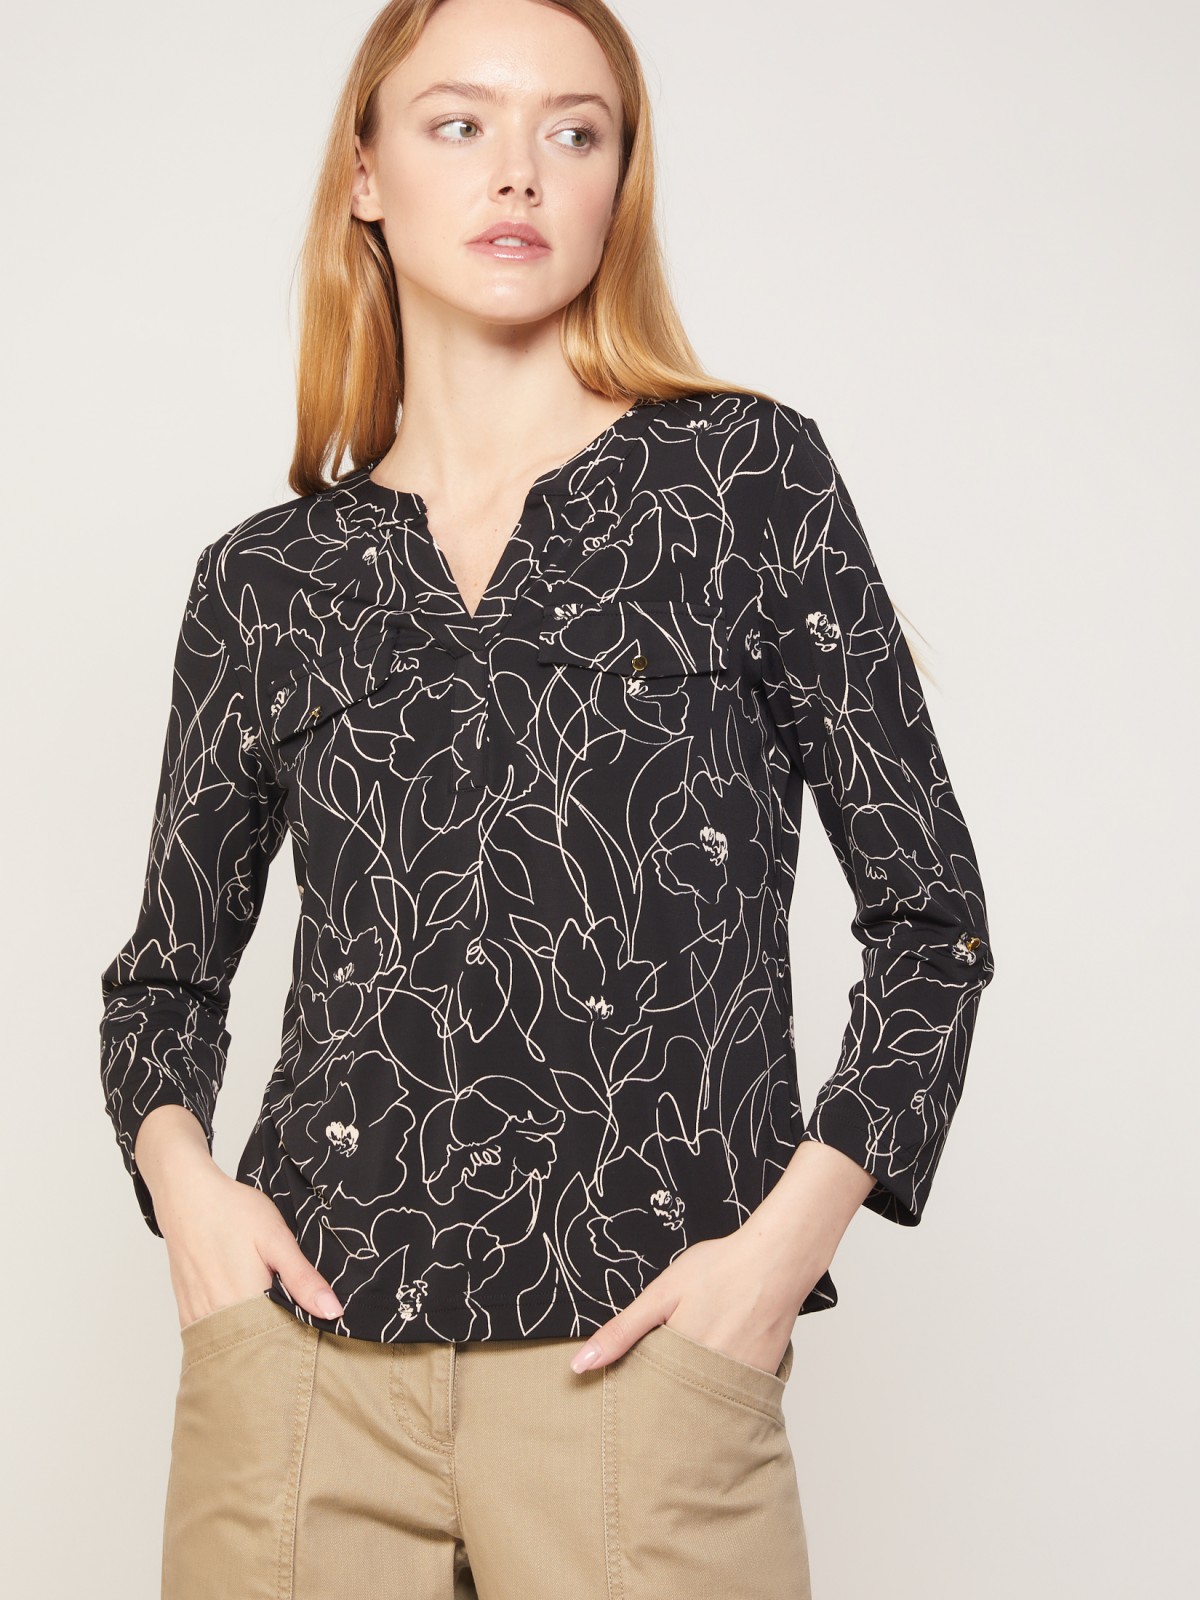 Блузка с рукавами длиной 3/4 zolla 021333159133, цвет черный, размер XS - фото 2